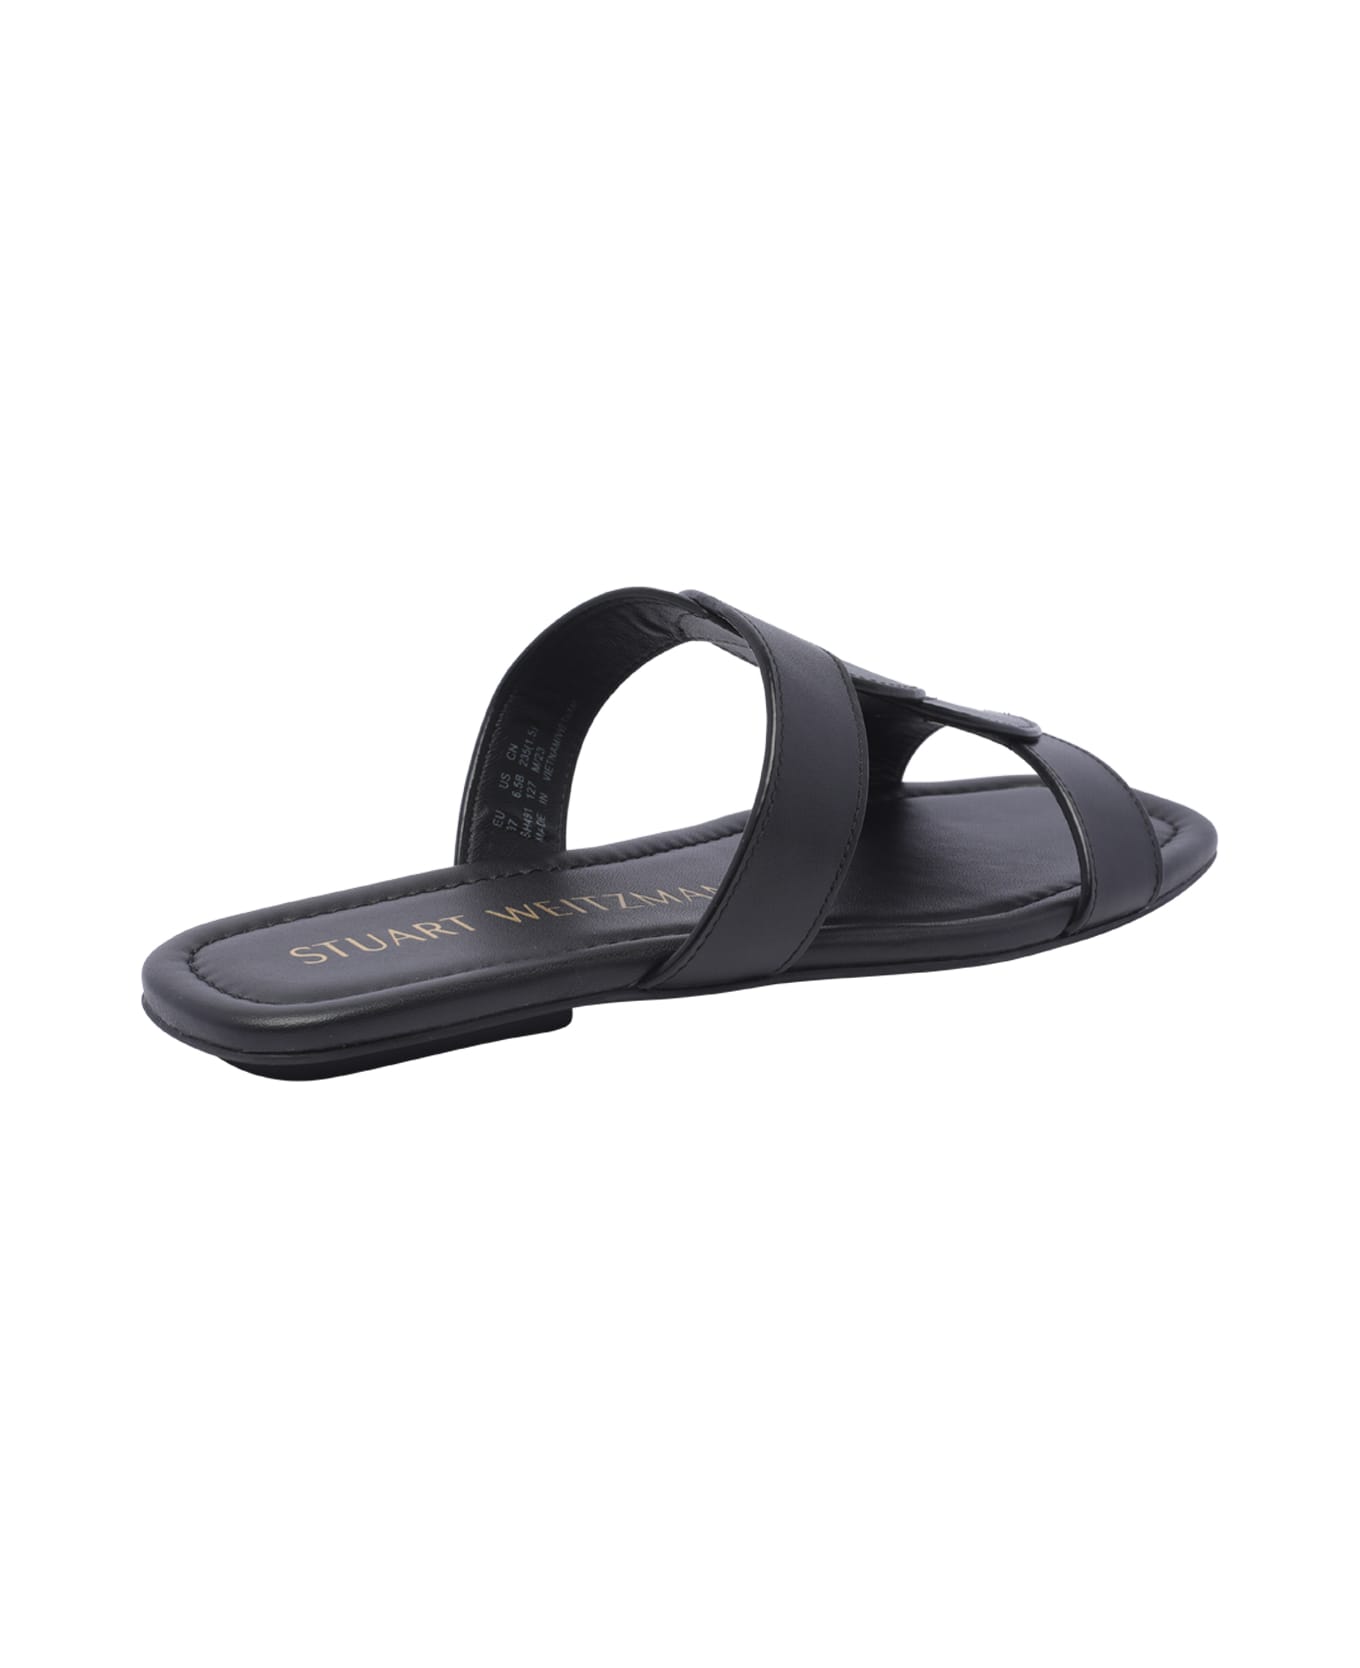 Stuart Weitzman Ibiza Sandals - Black サンダル